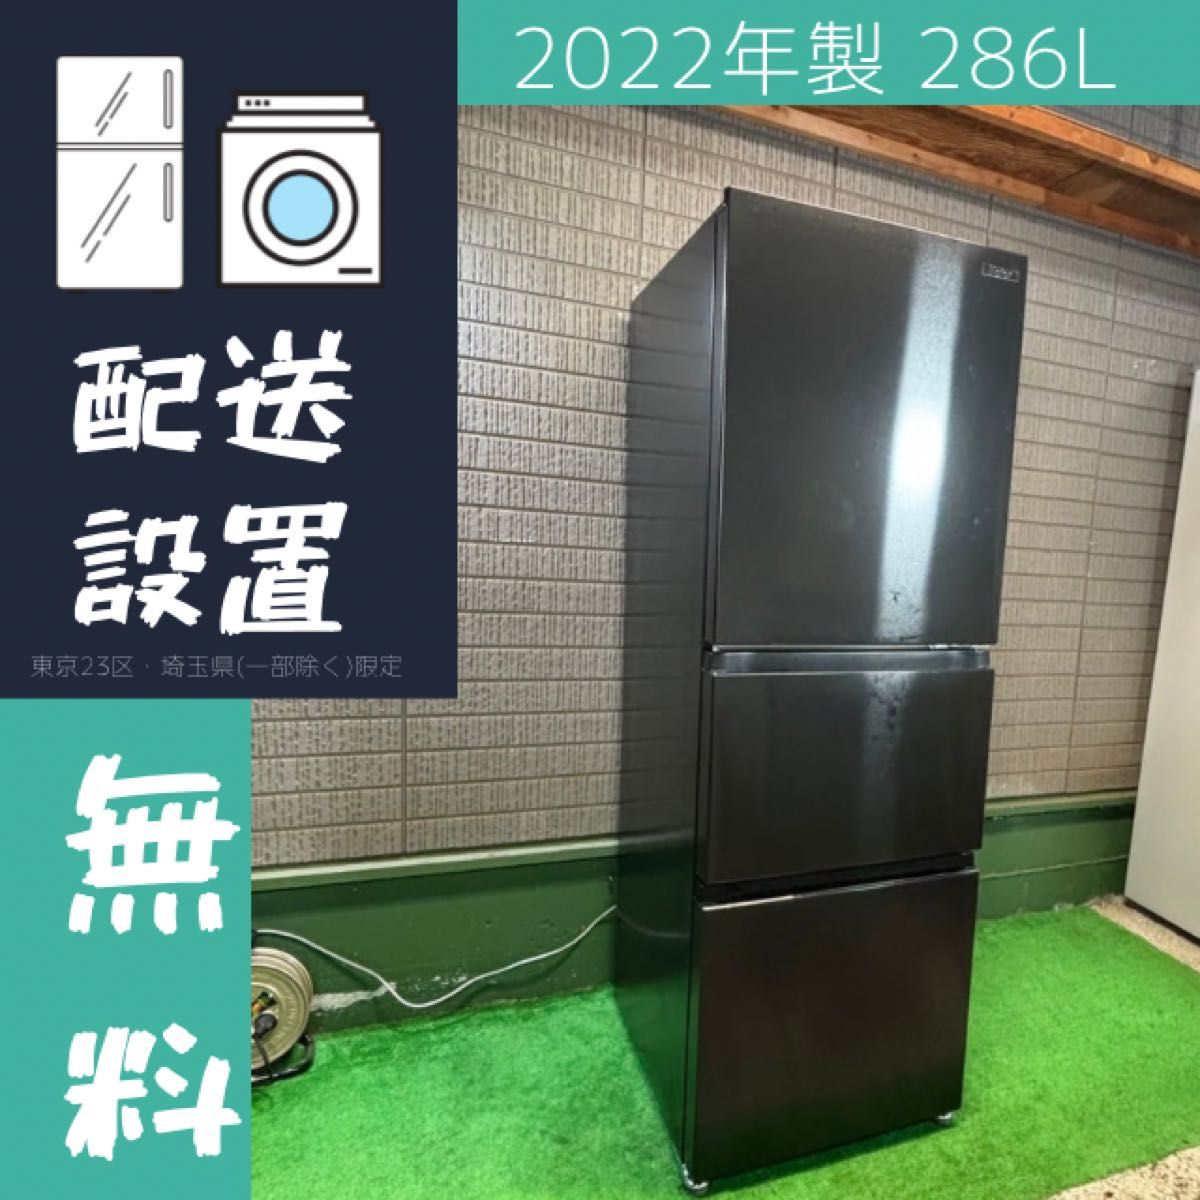 2022年製 286L 冷蔵庫 おしゃれブラック Haier【地域限定配送無料】